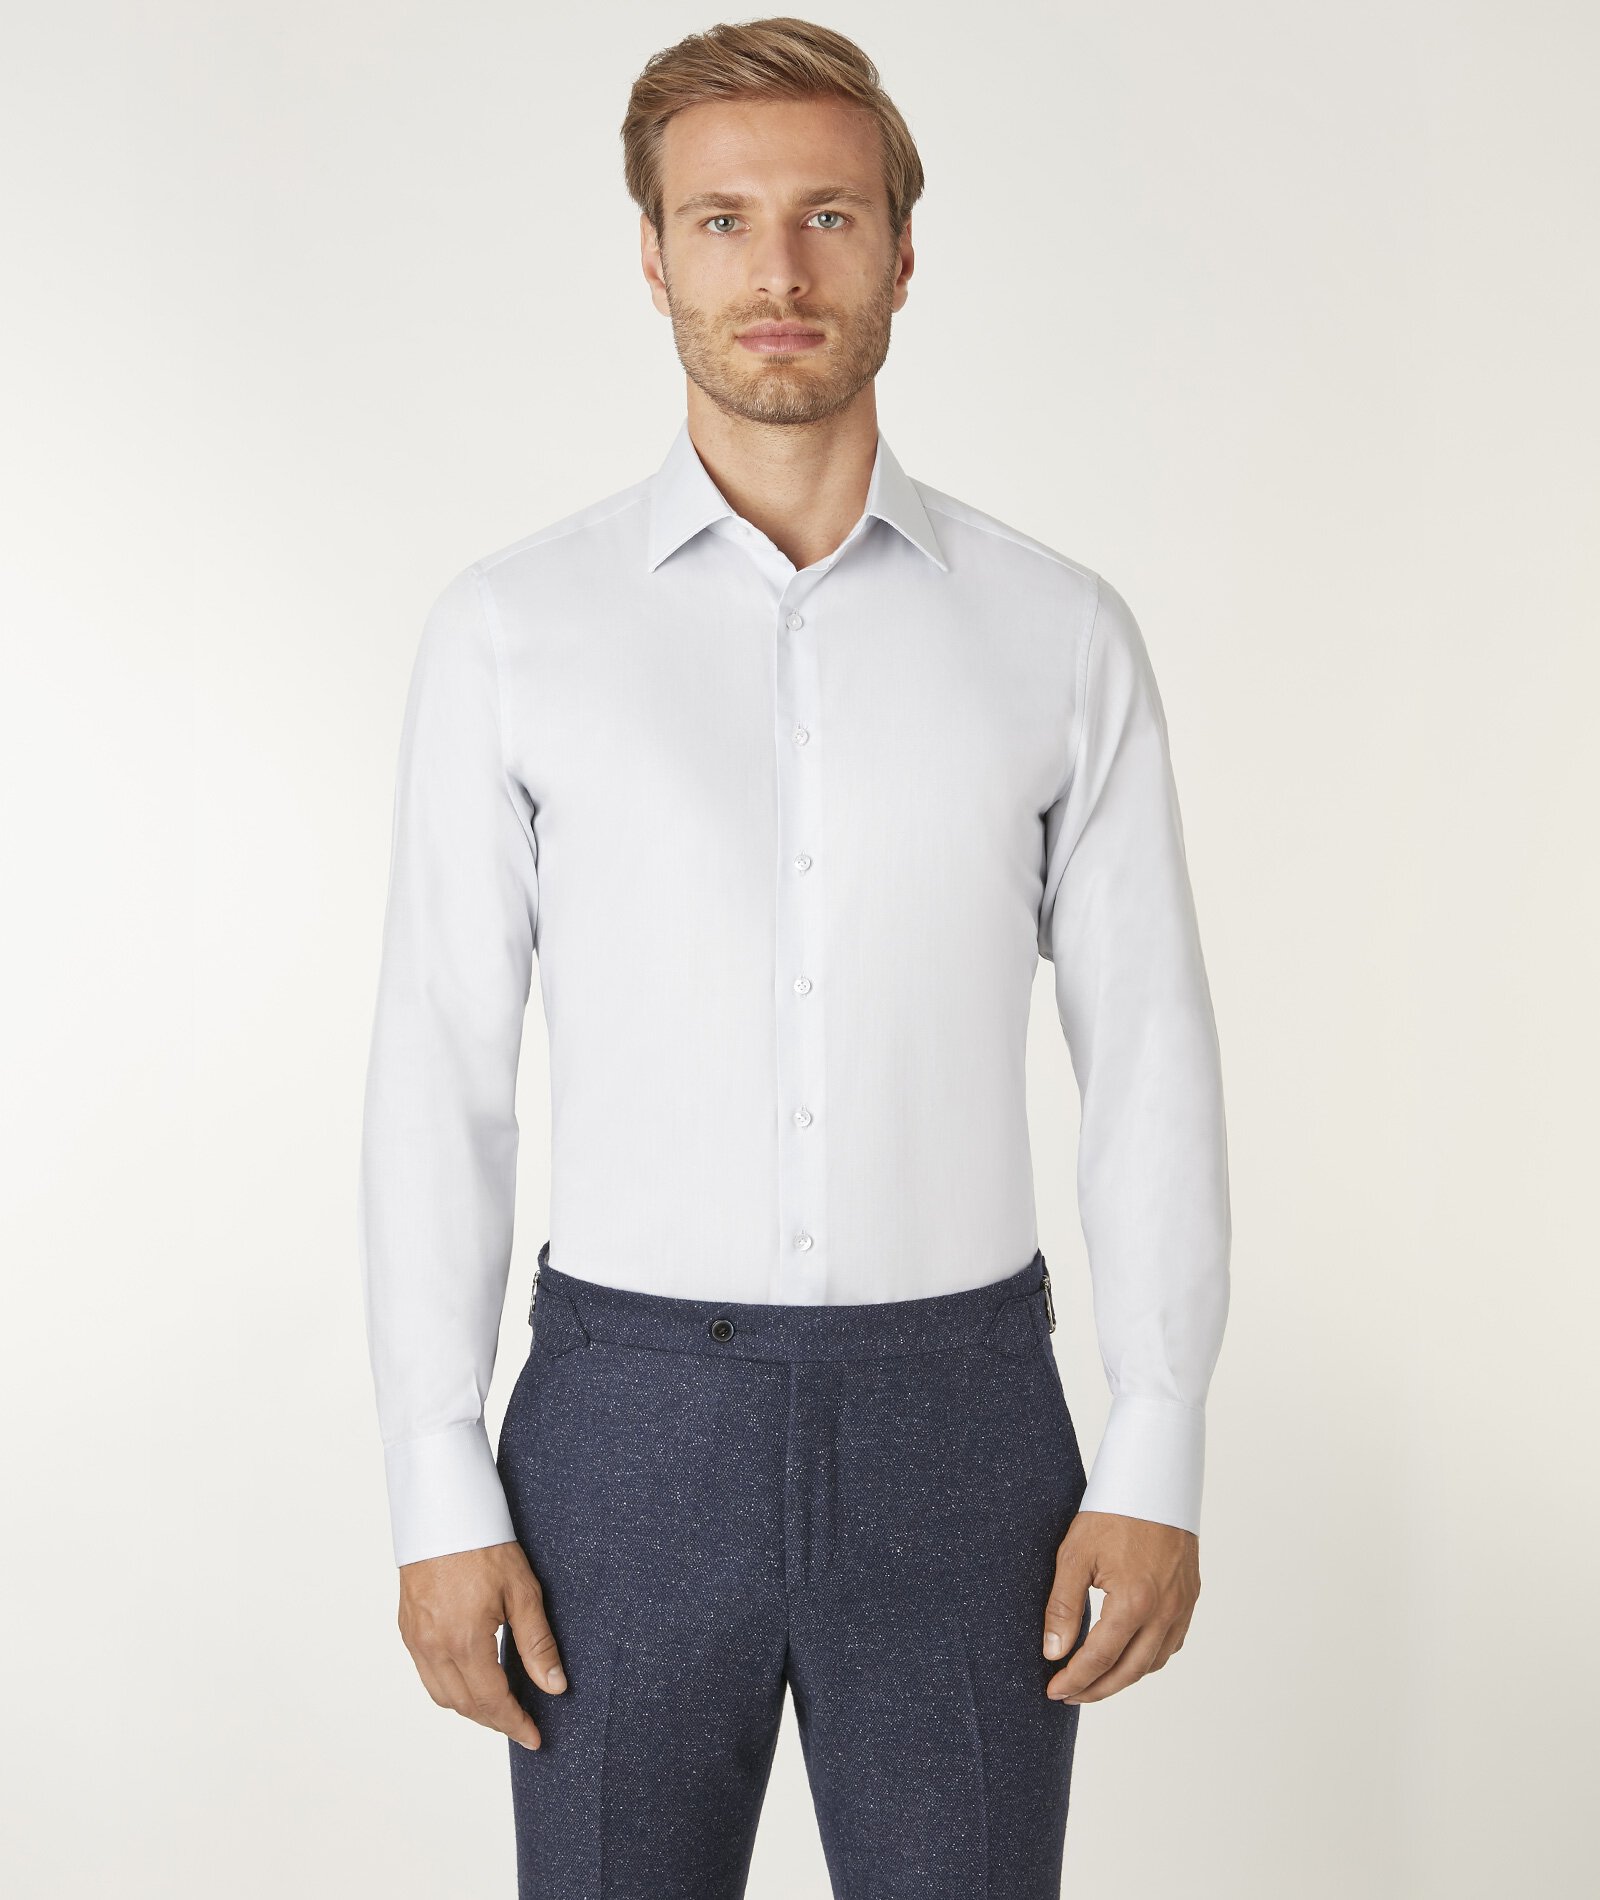 Image of Camicia da uomo su misura, Canclini, 100% Cotone Grigio Quattro Stagioni, Quattro Stagioni | Lanieri